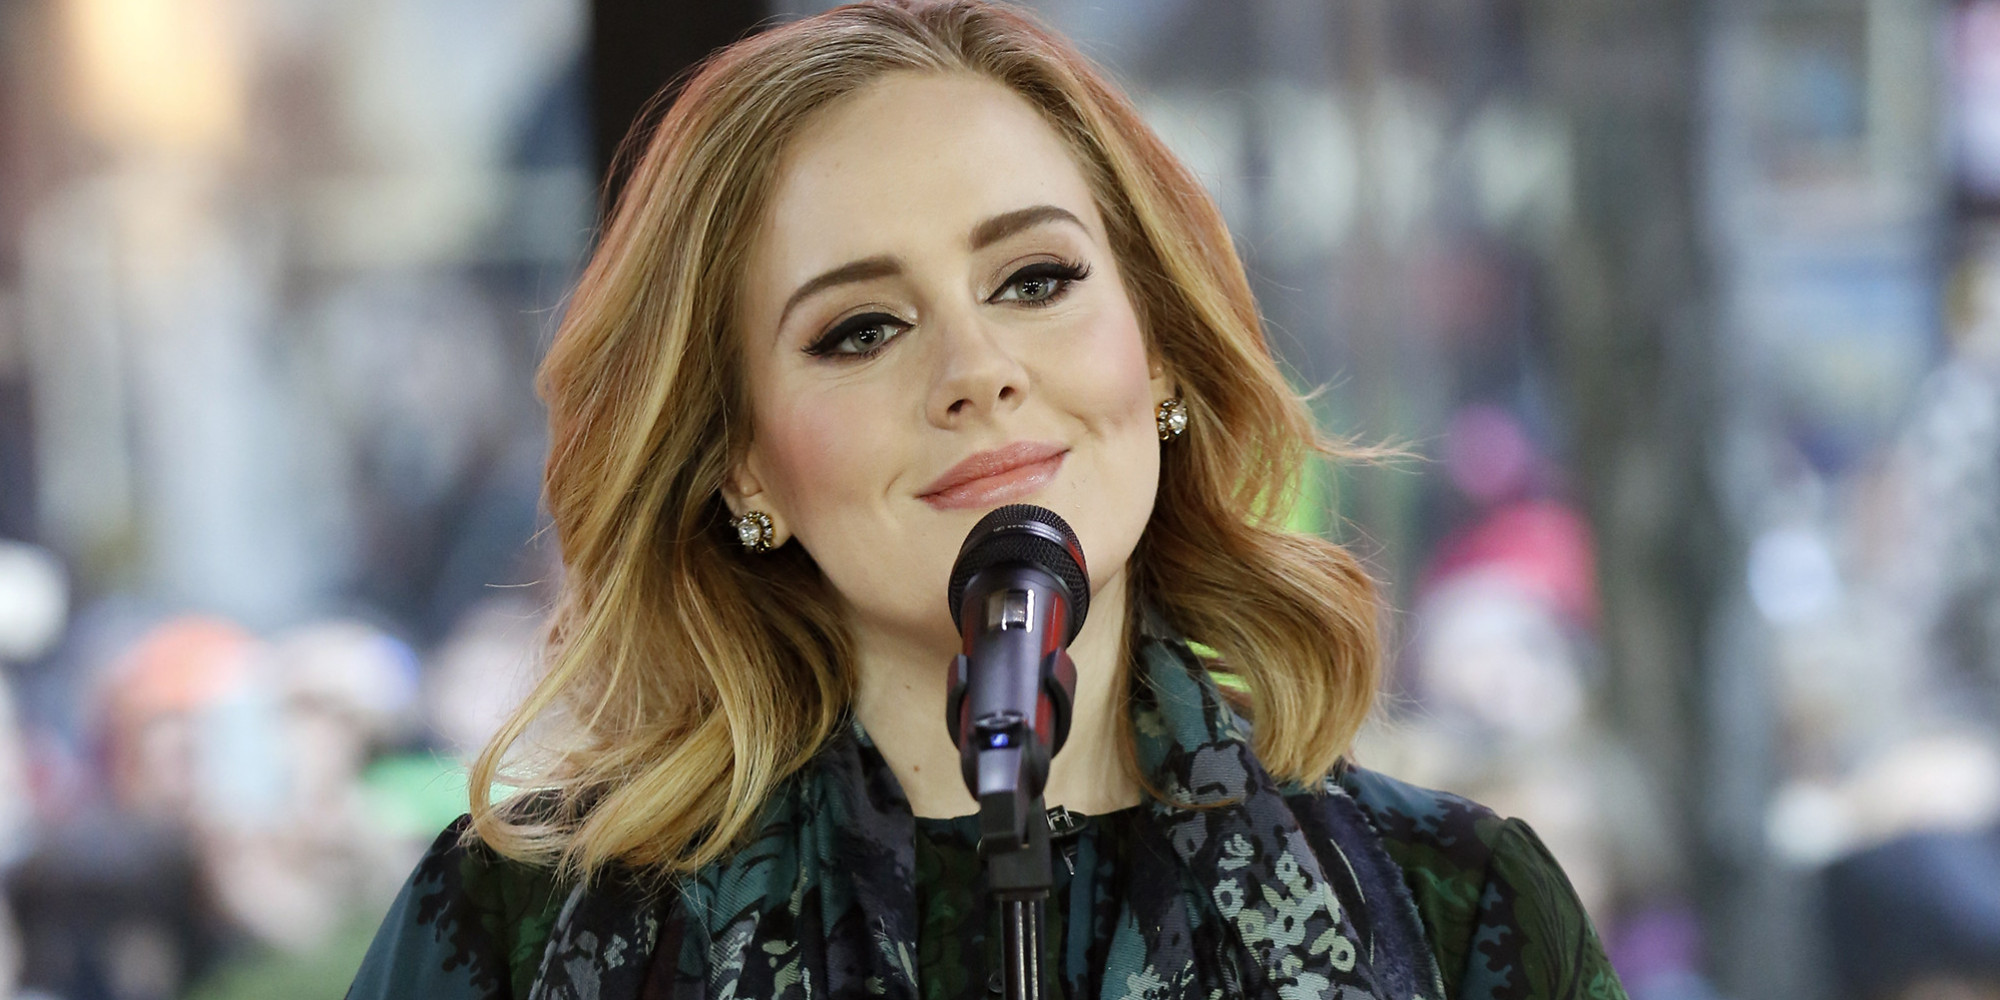 Adele Tour: ‘25' Singer Announces European Live Shows For 2016 | HuffPost UK